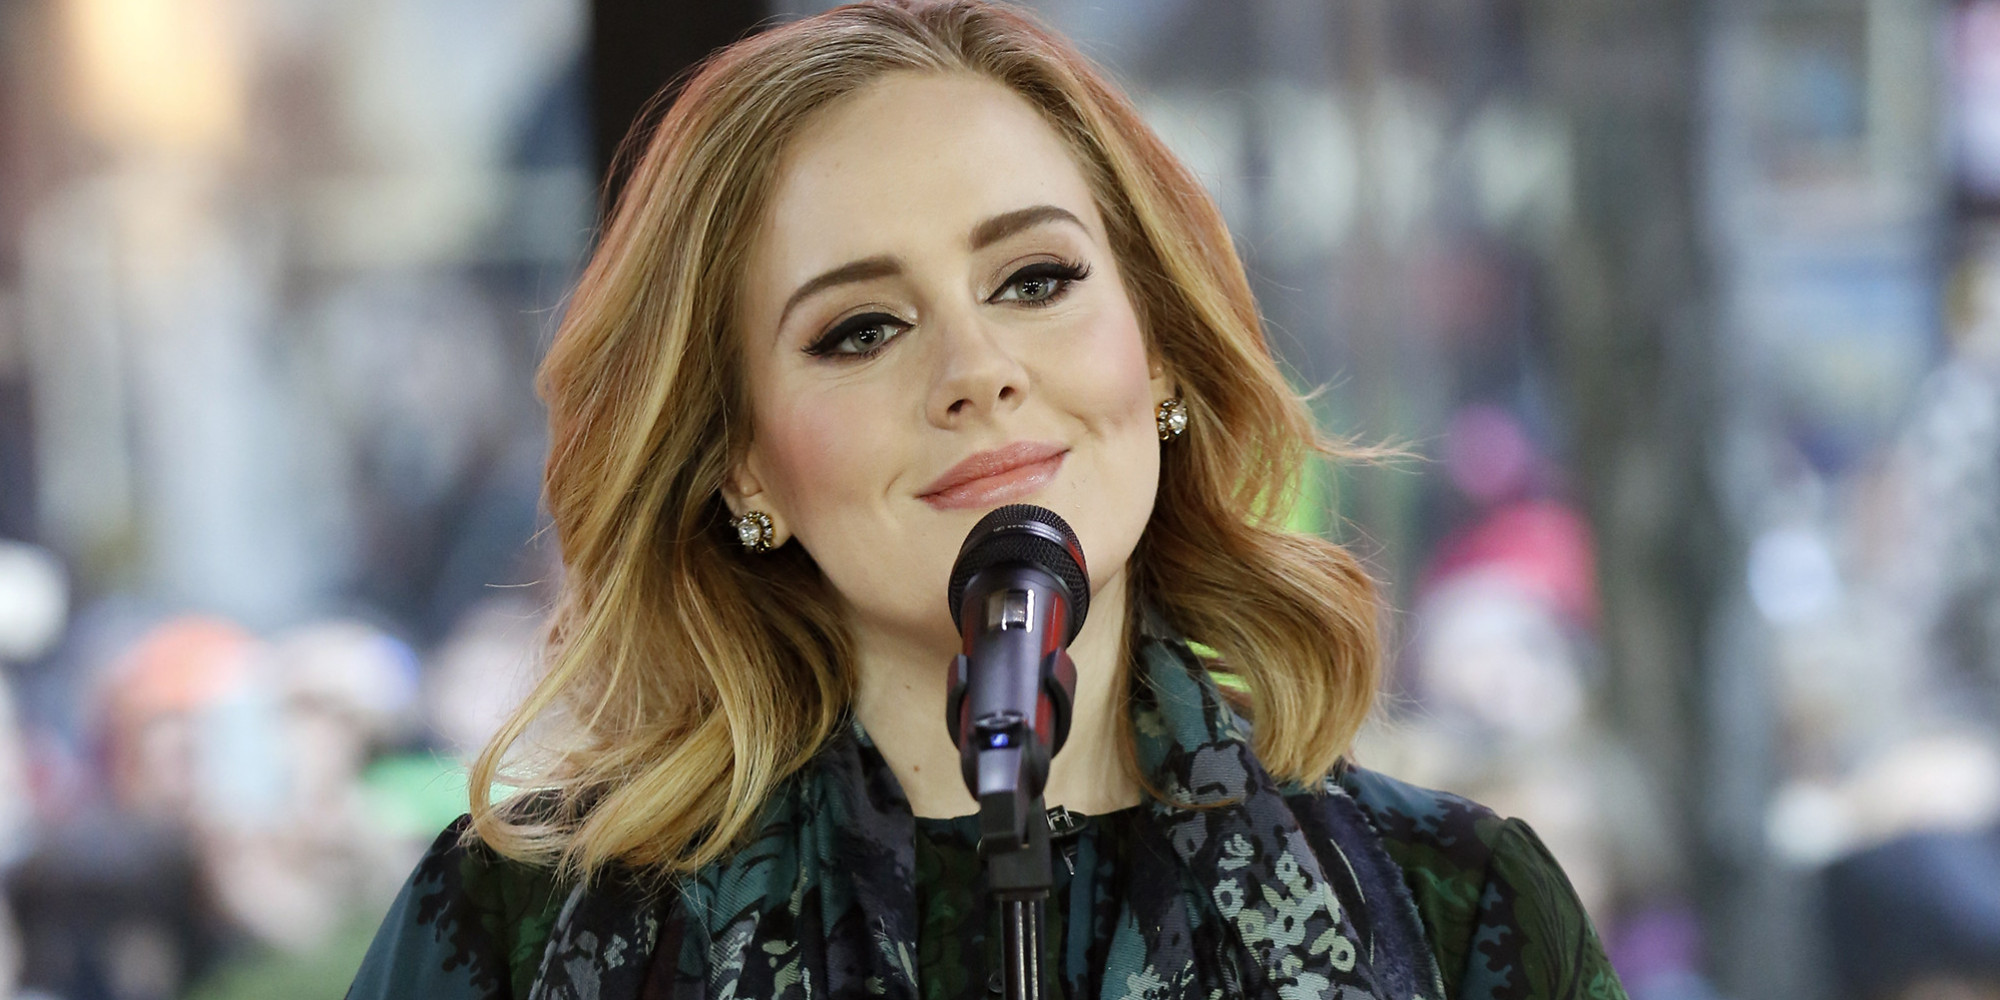 Adele Tour: ‘25' Singer Announces European Live Shows For 2016 | HuffPost UK